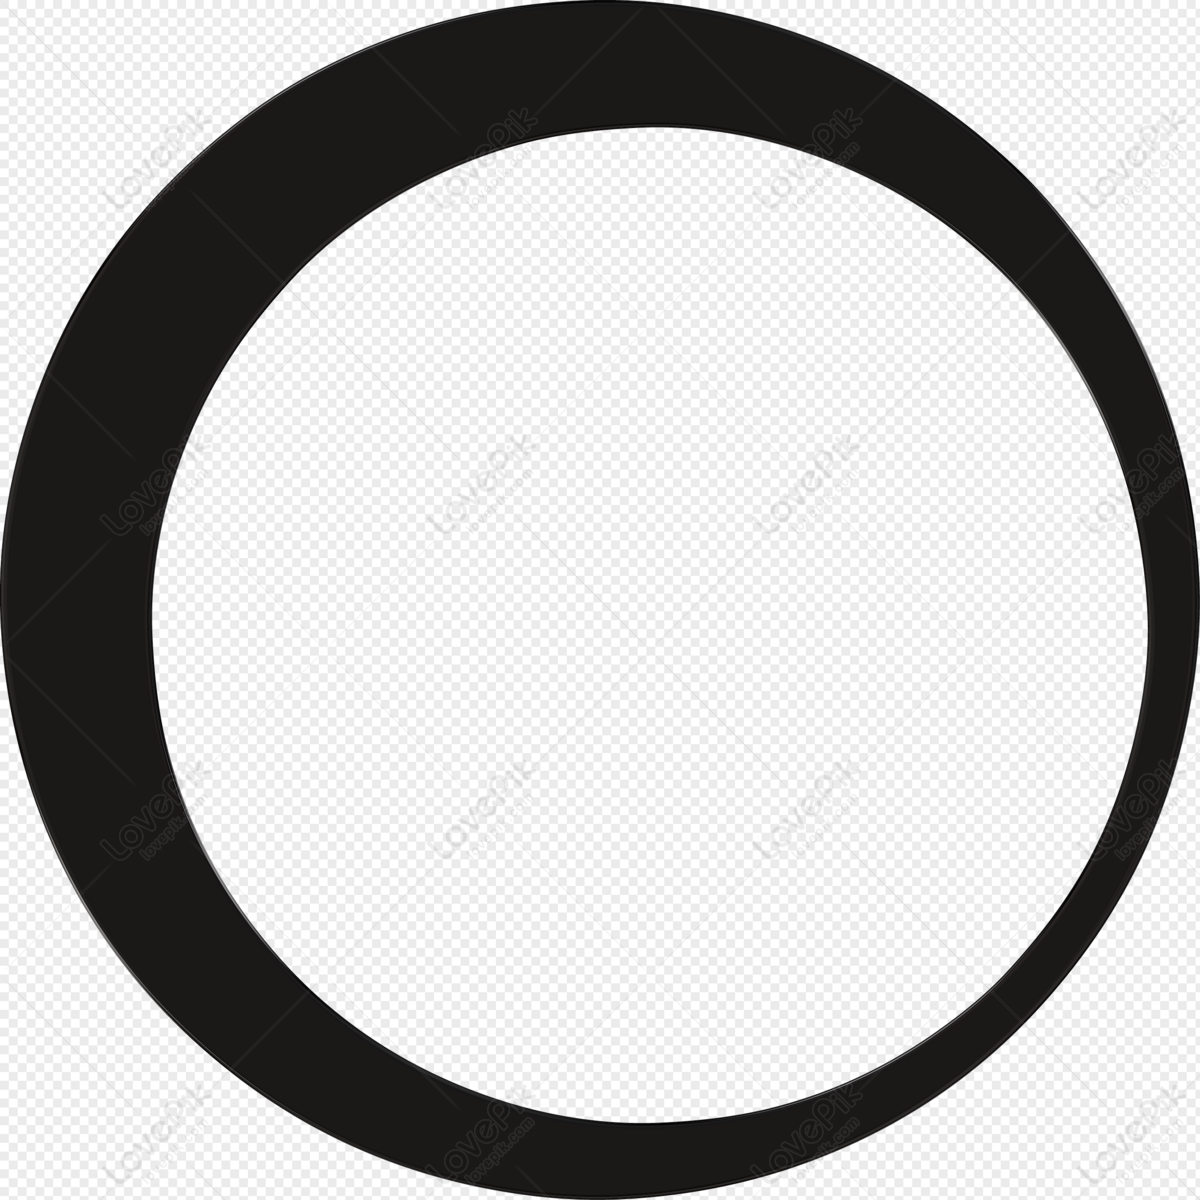 Vòng tròn màu đen png là một trong những hình ảnh phổ biến nhất được sử dụng trong thiết kế web. Với gam màu đen sắc nét và hình dạng đồng nhất, vòng tròn màu đen png sẽ giúp thiết kế của bạn trở nên đẹp mắt và chuyên nghiệp hơn bao giờ hết. Hơn nữa, bạn có thể dễ dàng tùy chỉnh kích thước và màu sắc để phù hợp với nhu cầu của mình.